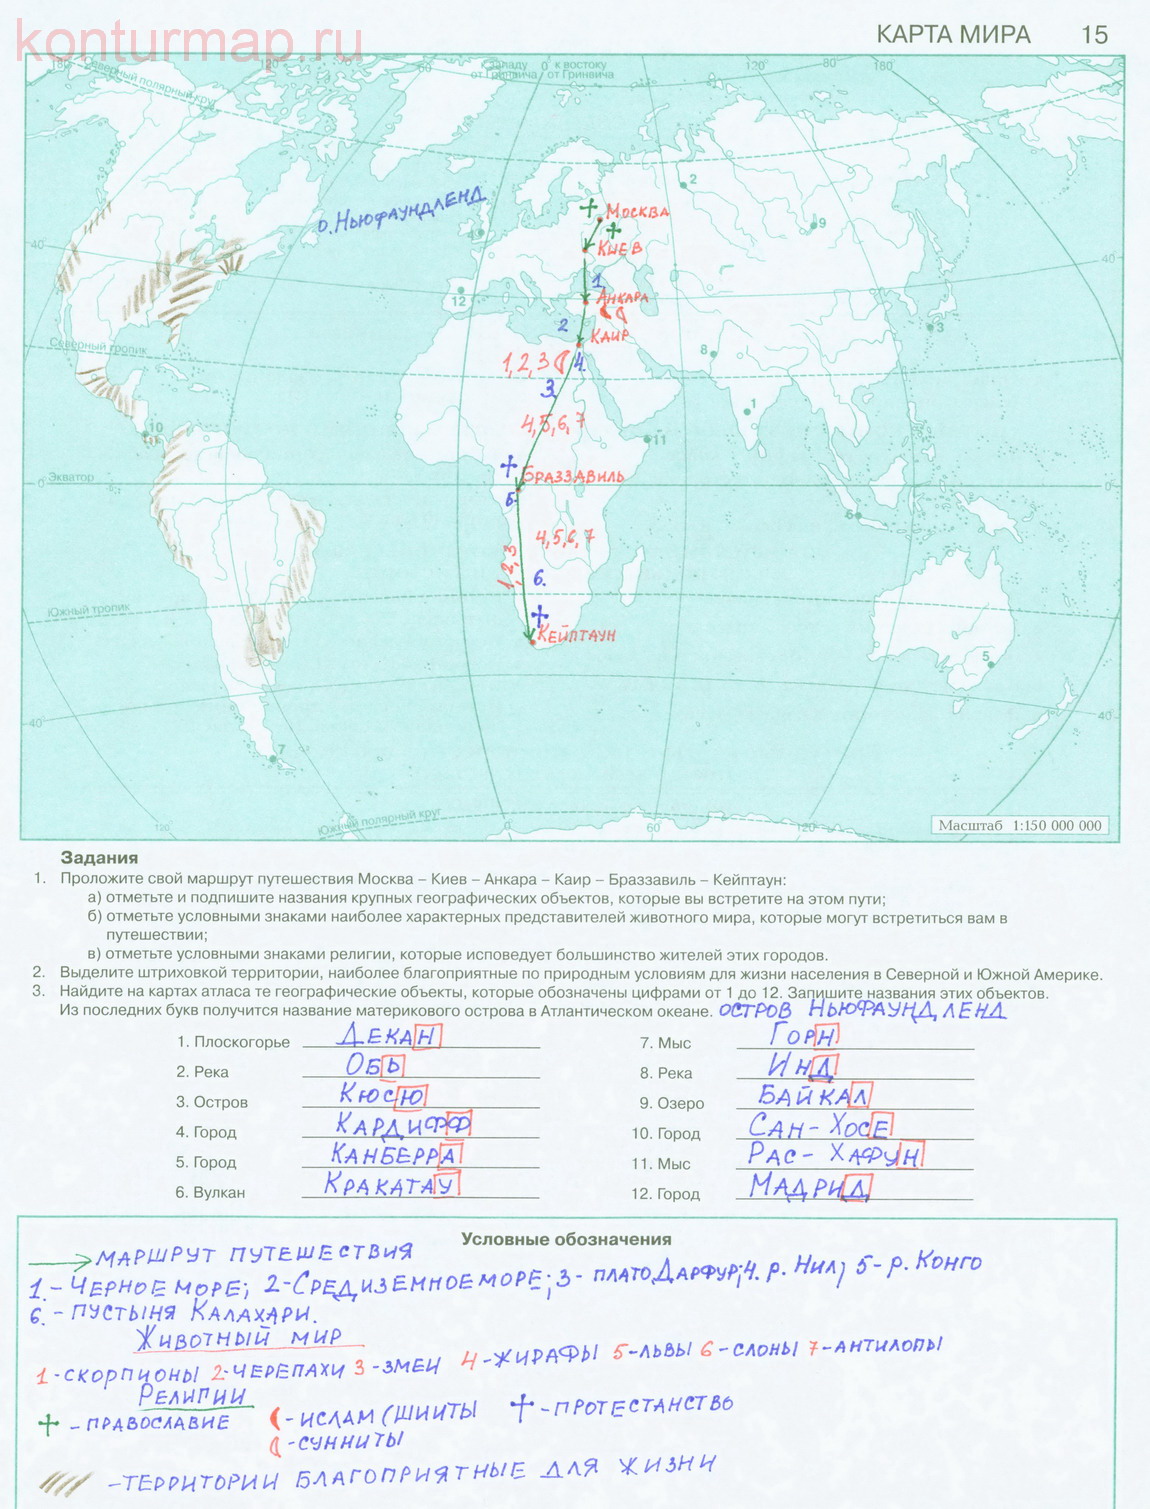 Гдз контурные карты по географии 7 класс дрофа атлантический океан